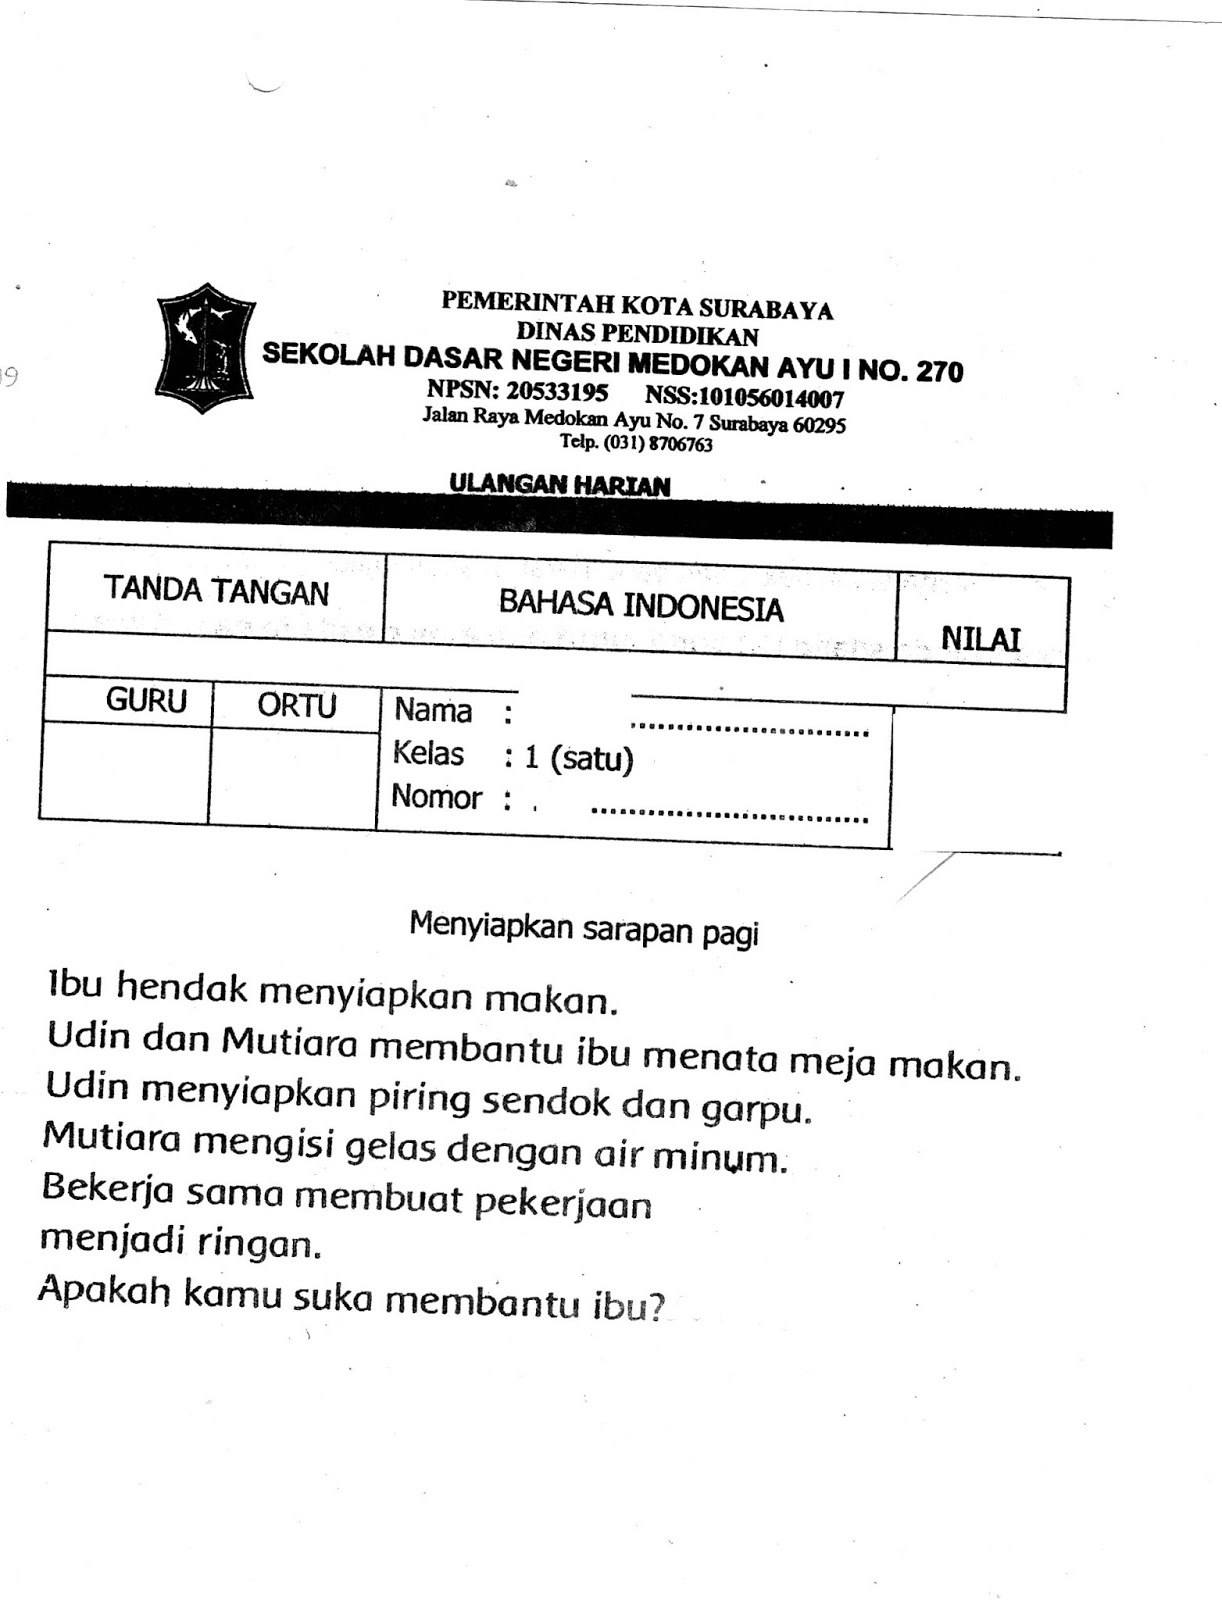 Ulangan Harian Matapelajaran Bahasa Indonesia SD Kelas 1 Semester Ganjil TA 2014 2015 Kurikulum 2013